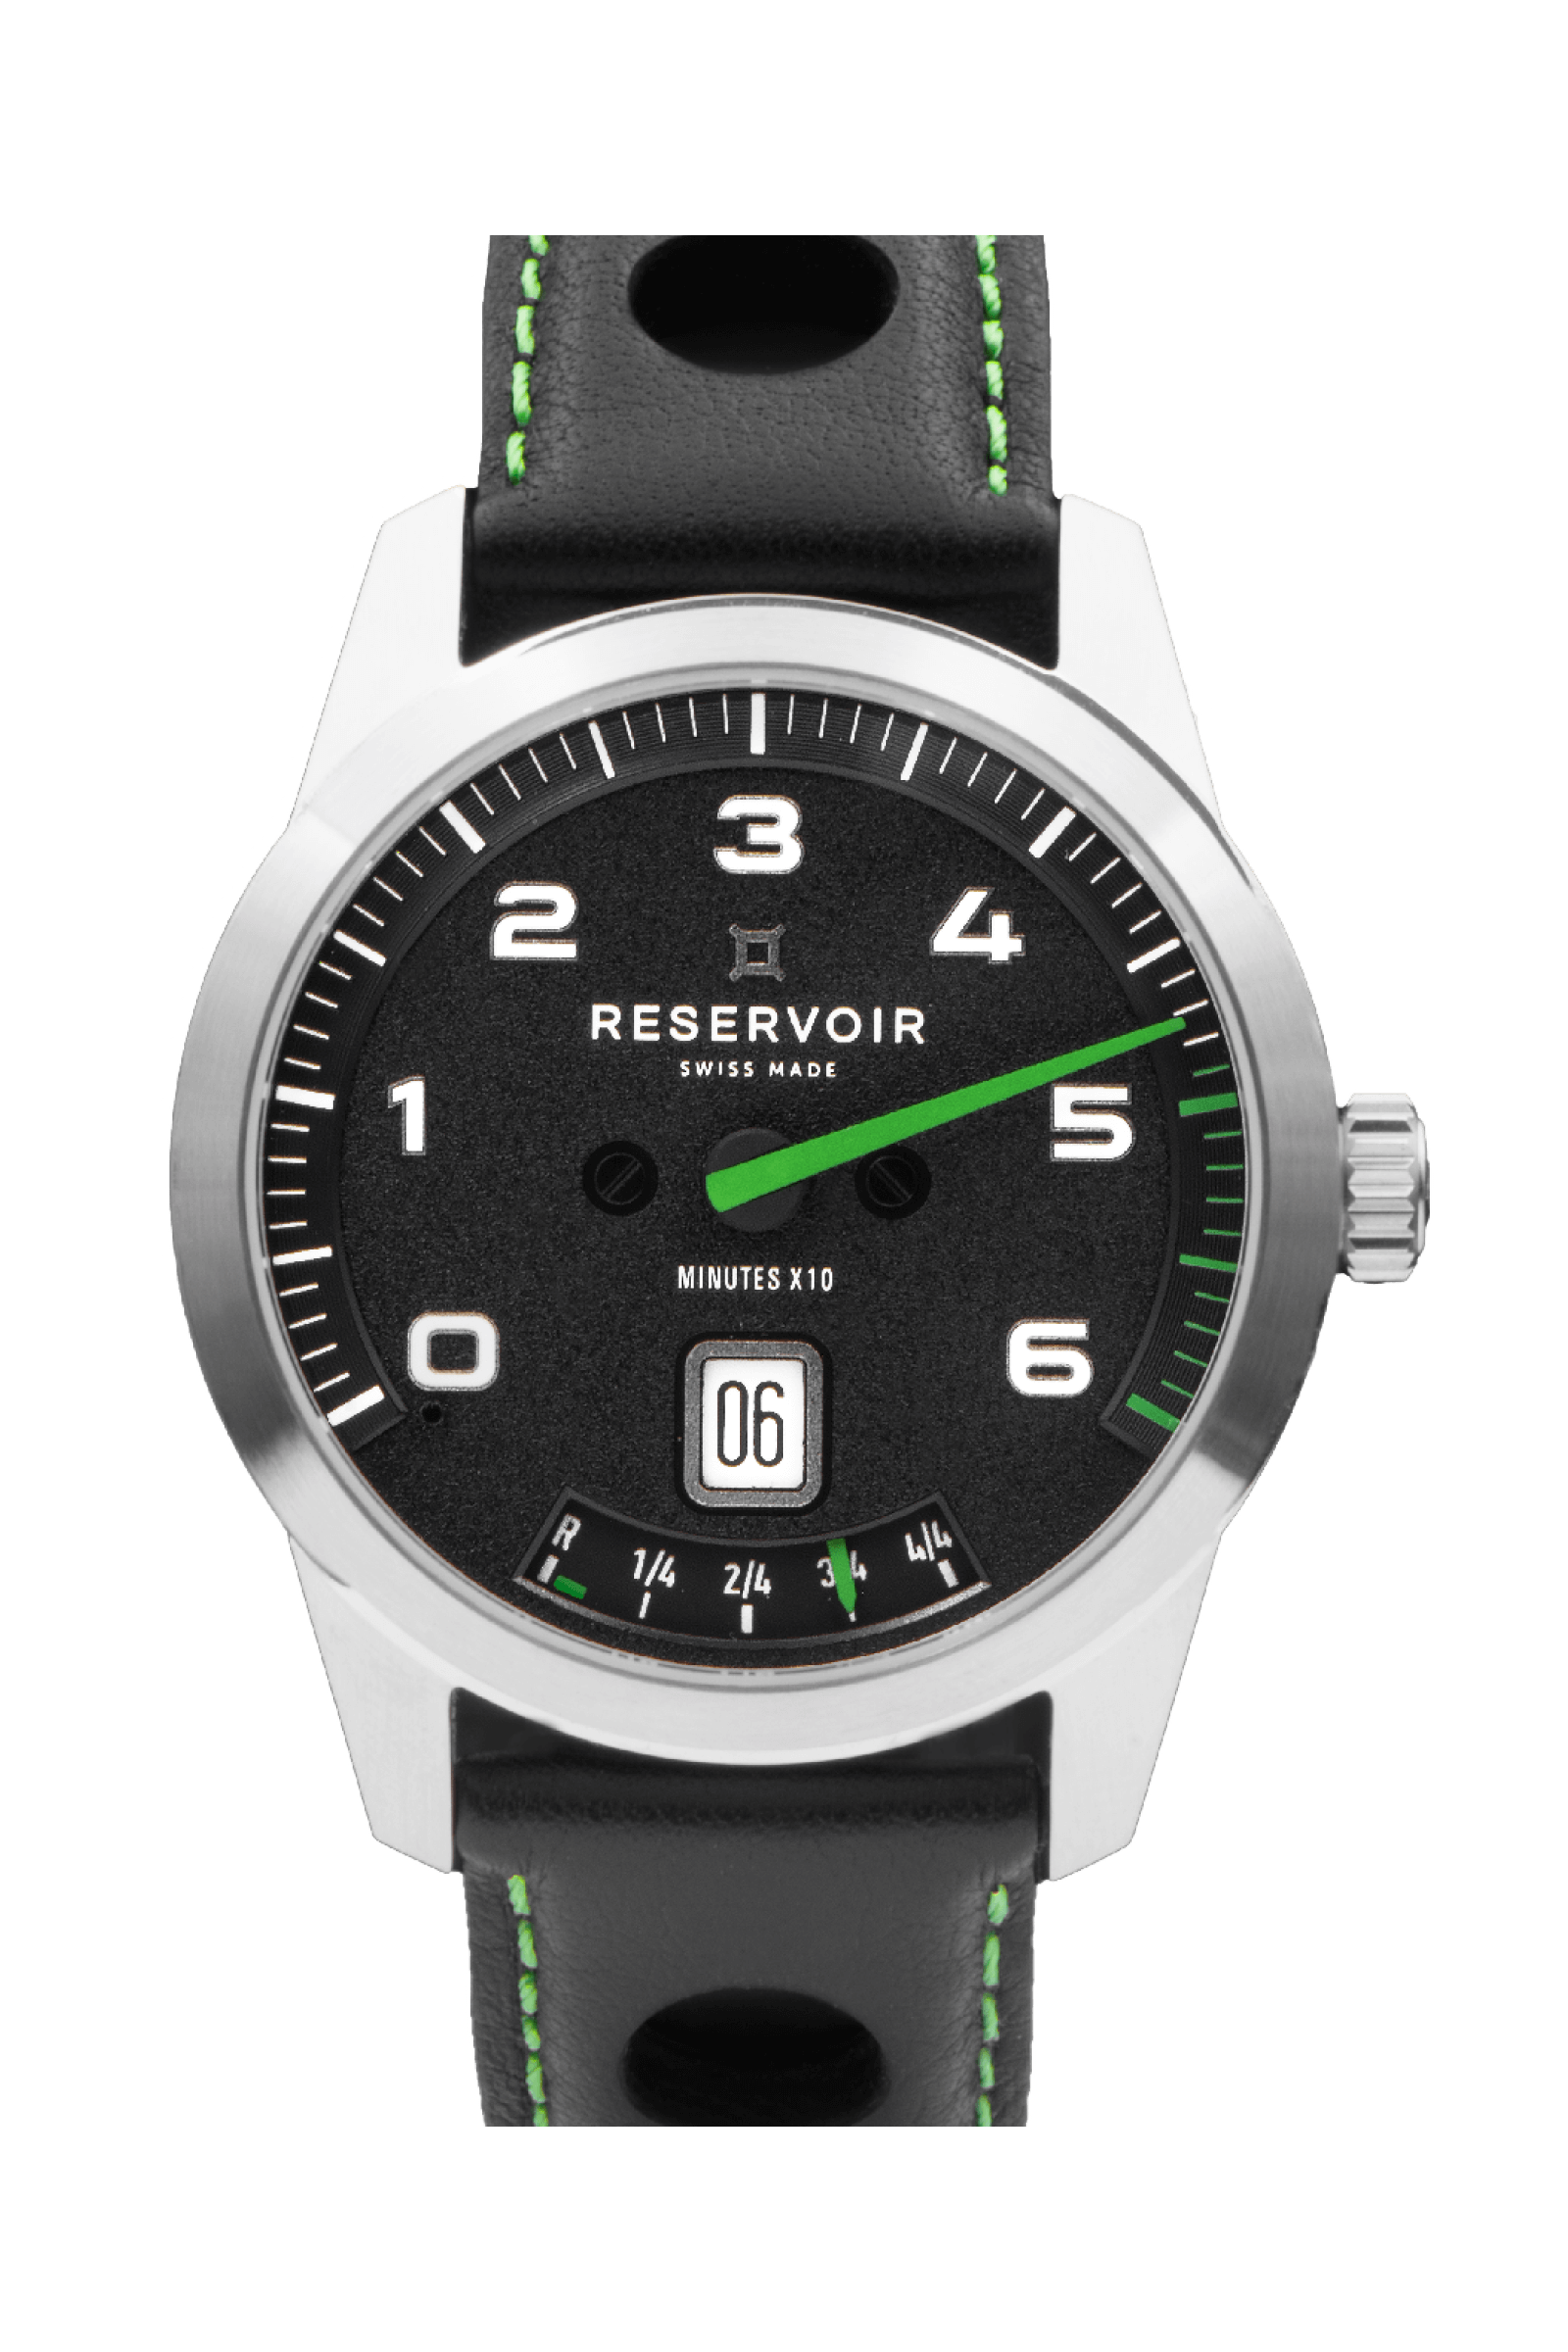 Media RESERVOIR watch en lujosos colores negro azabache, gris claro y verde oliva oscuro.